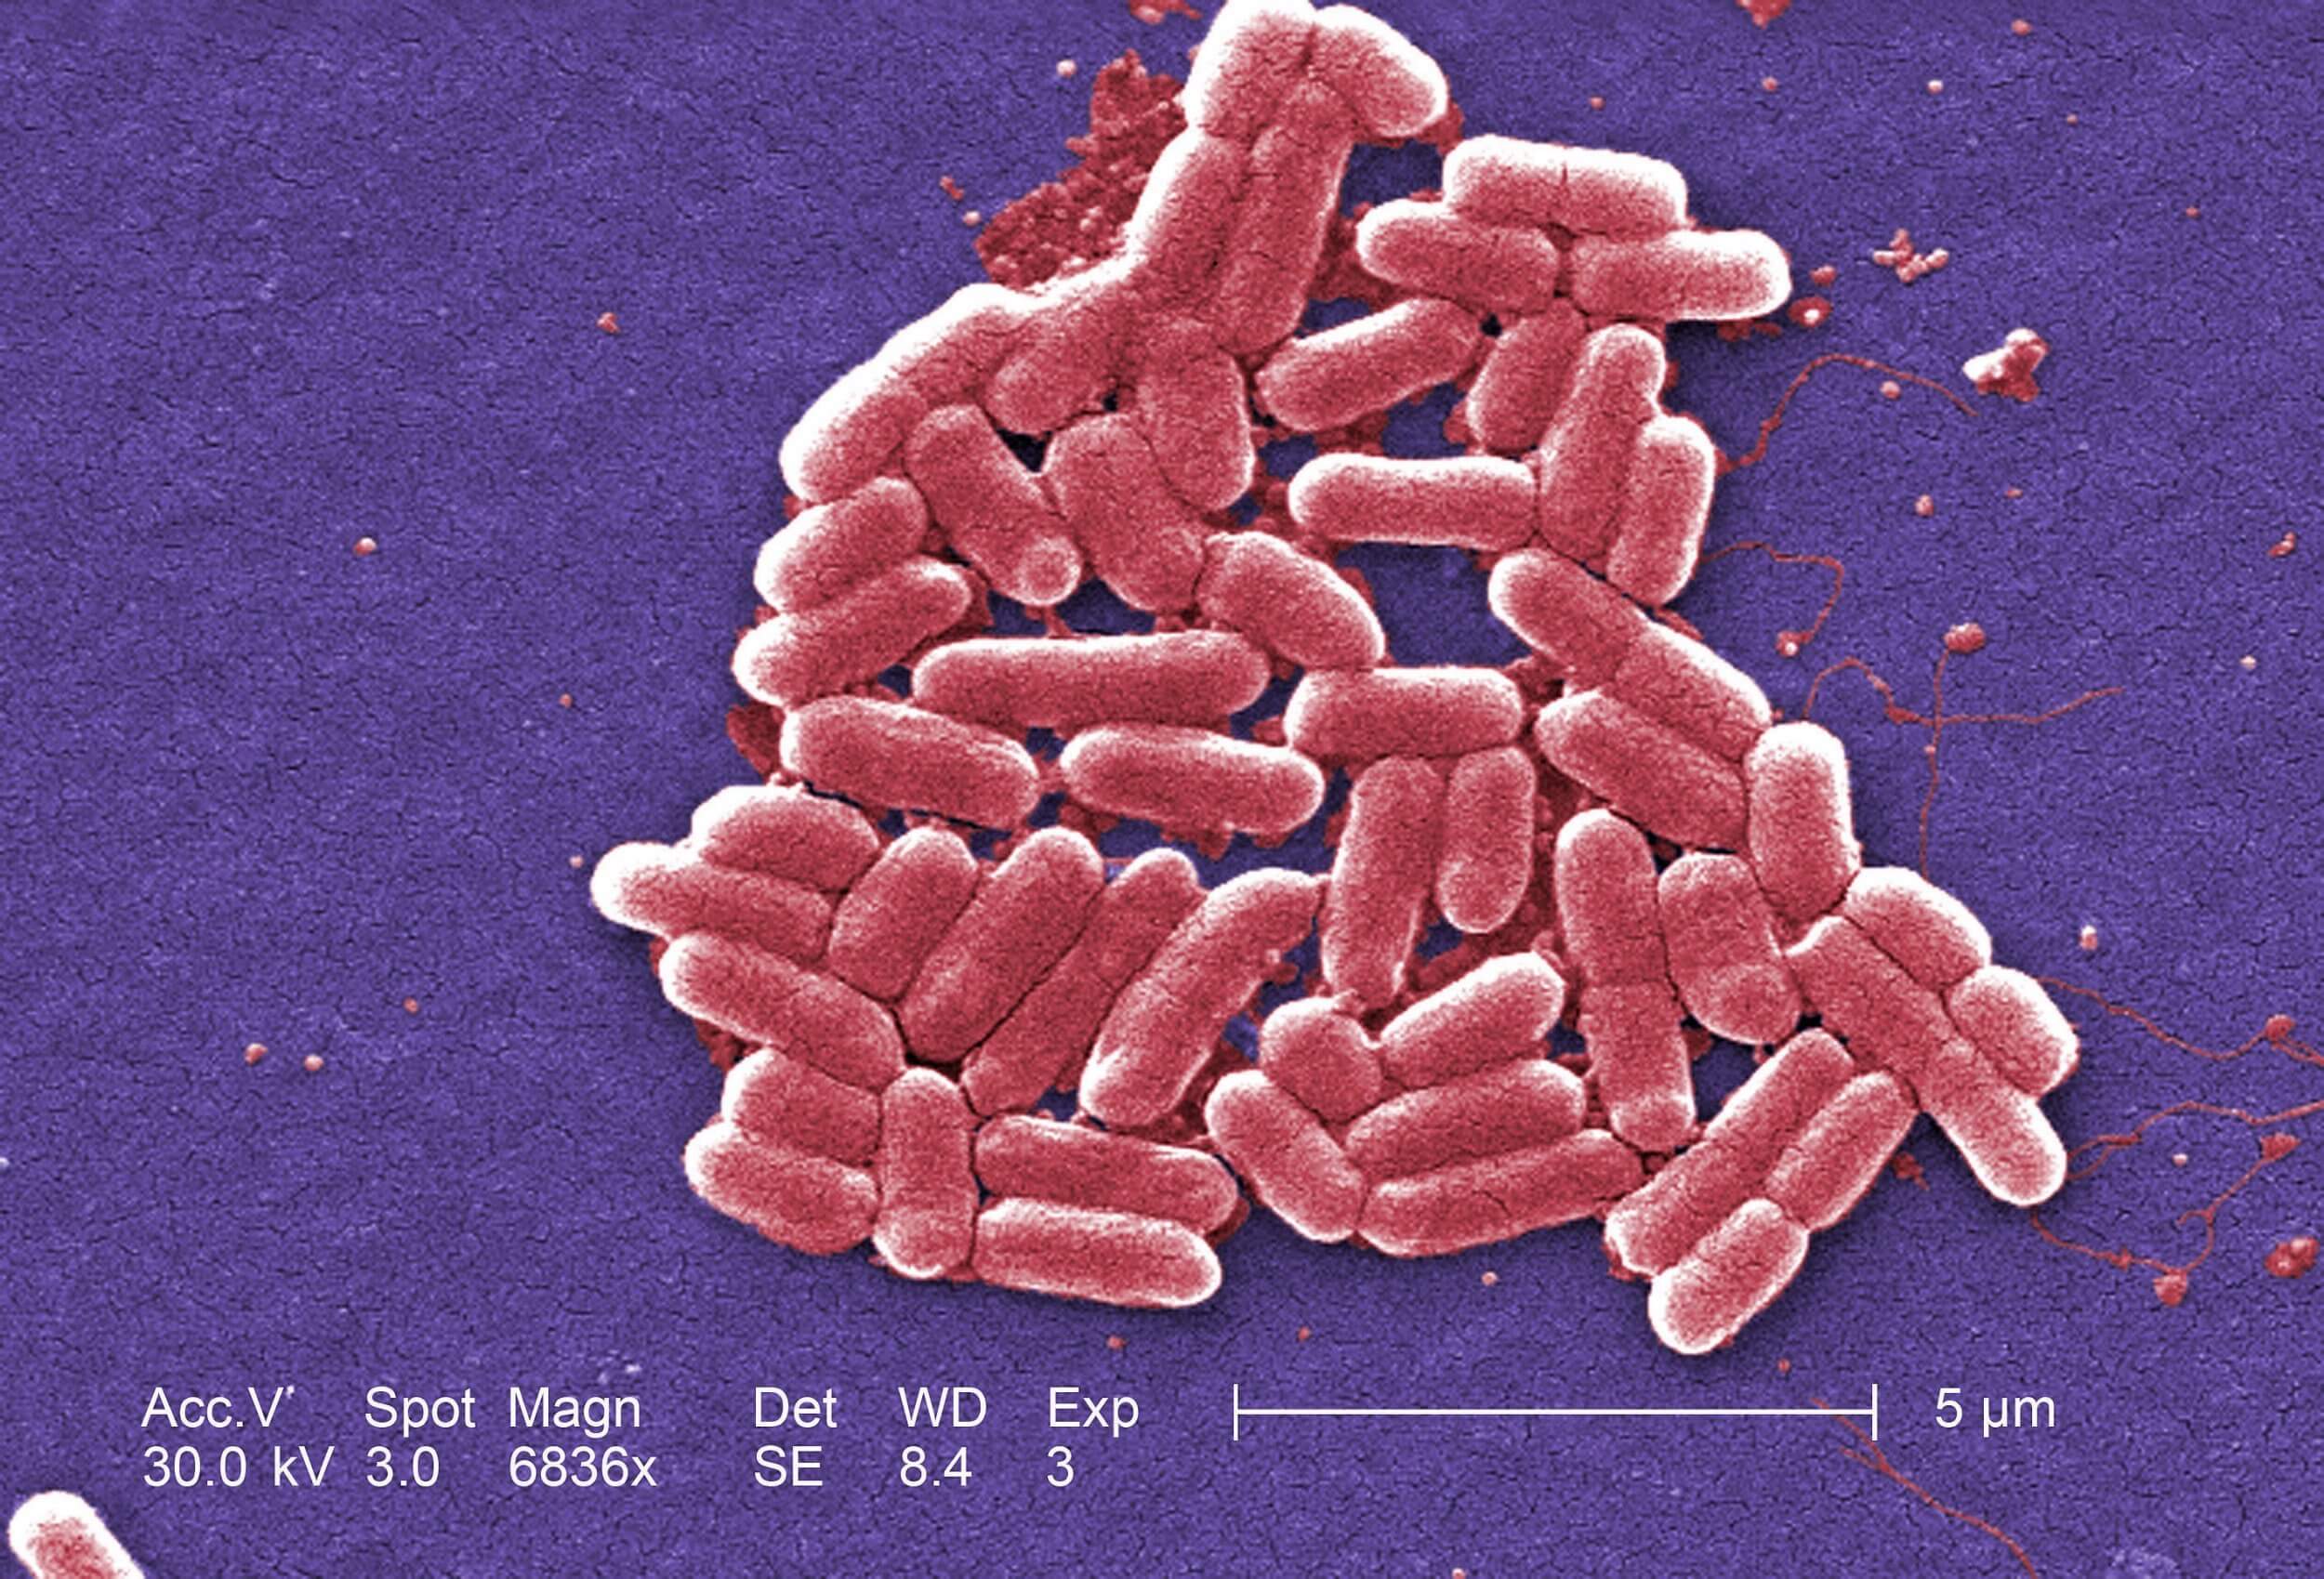 Ludzie, którzy nie myją rąk po skorzystaniu z toalety, rozprzestrzeniają się odporne na antybiotyki bakterie